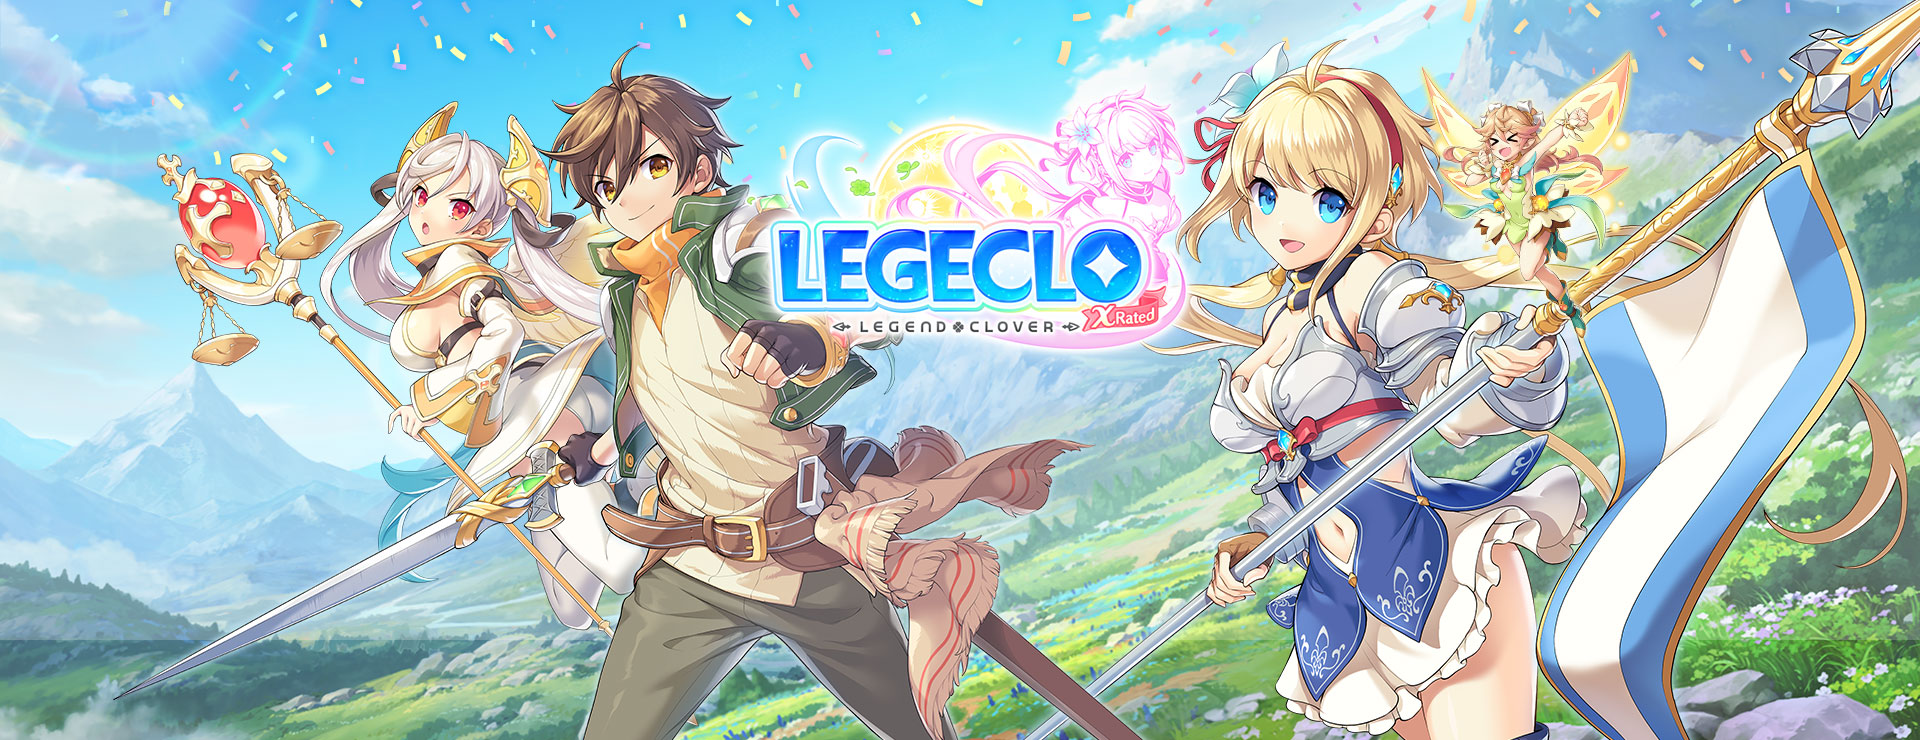 Legeclo: Legend Clover X Rated - Juegos RPG Estrategia por Turnos Juego